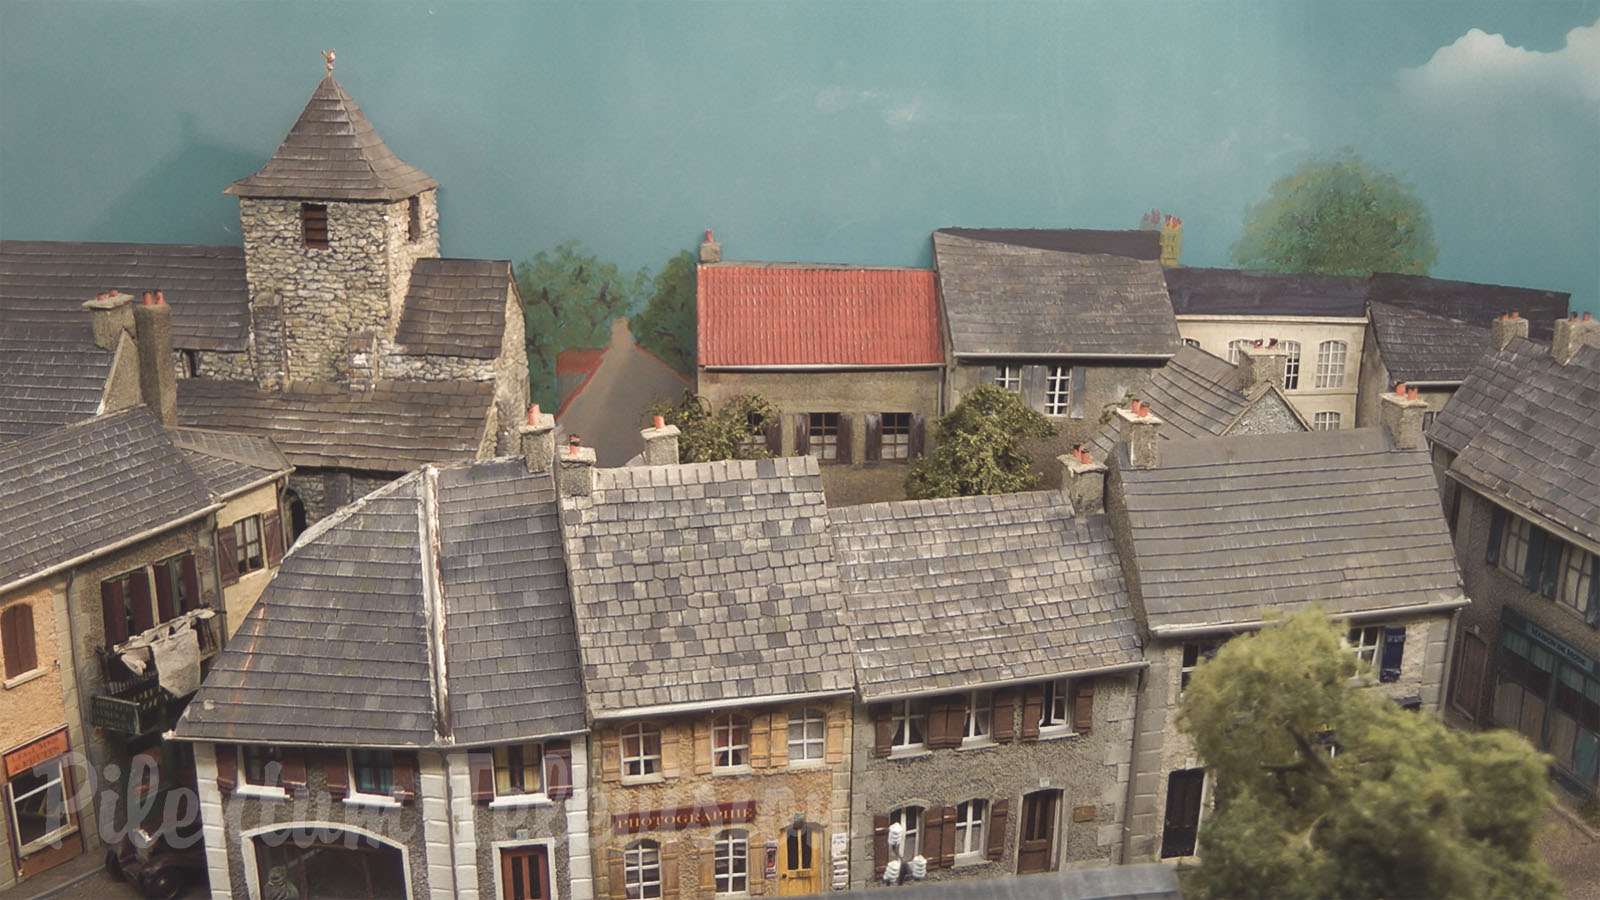 Pienoisrautatie - Ranskalainen kylä, jossa kaikki haluaisivat asua höyryveturin ansiosta